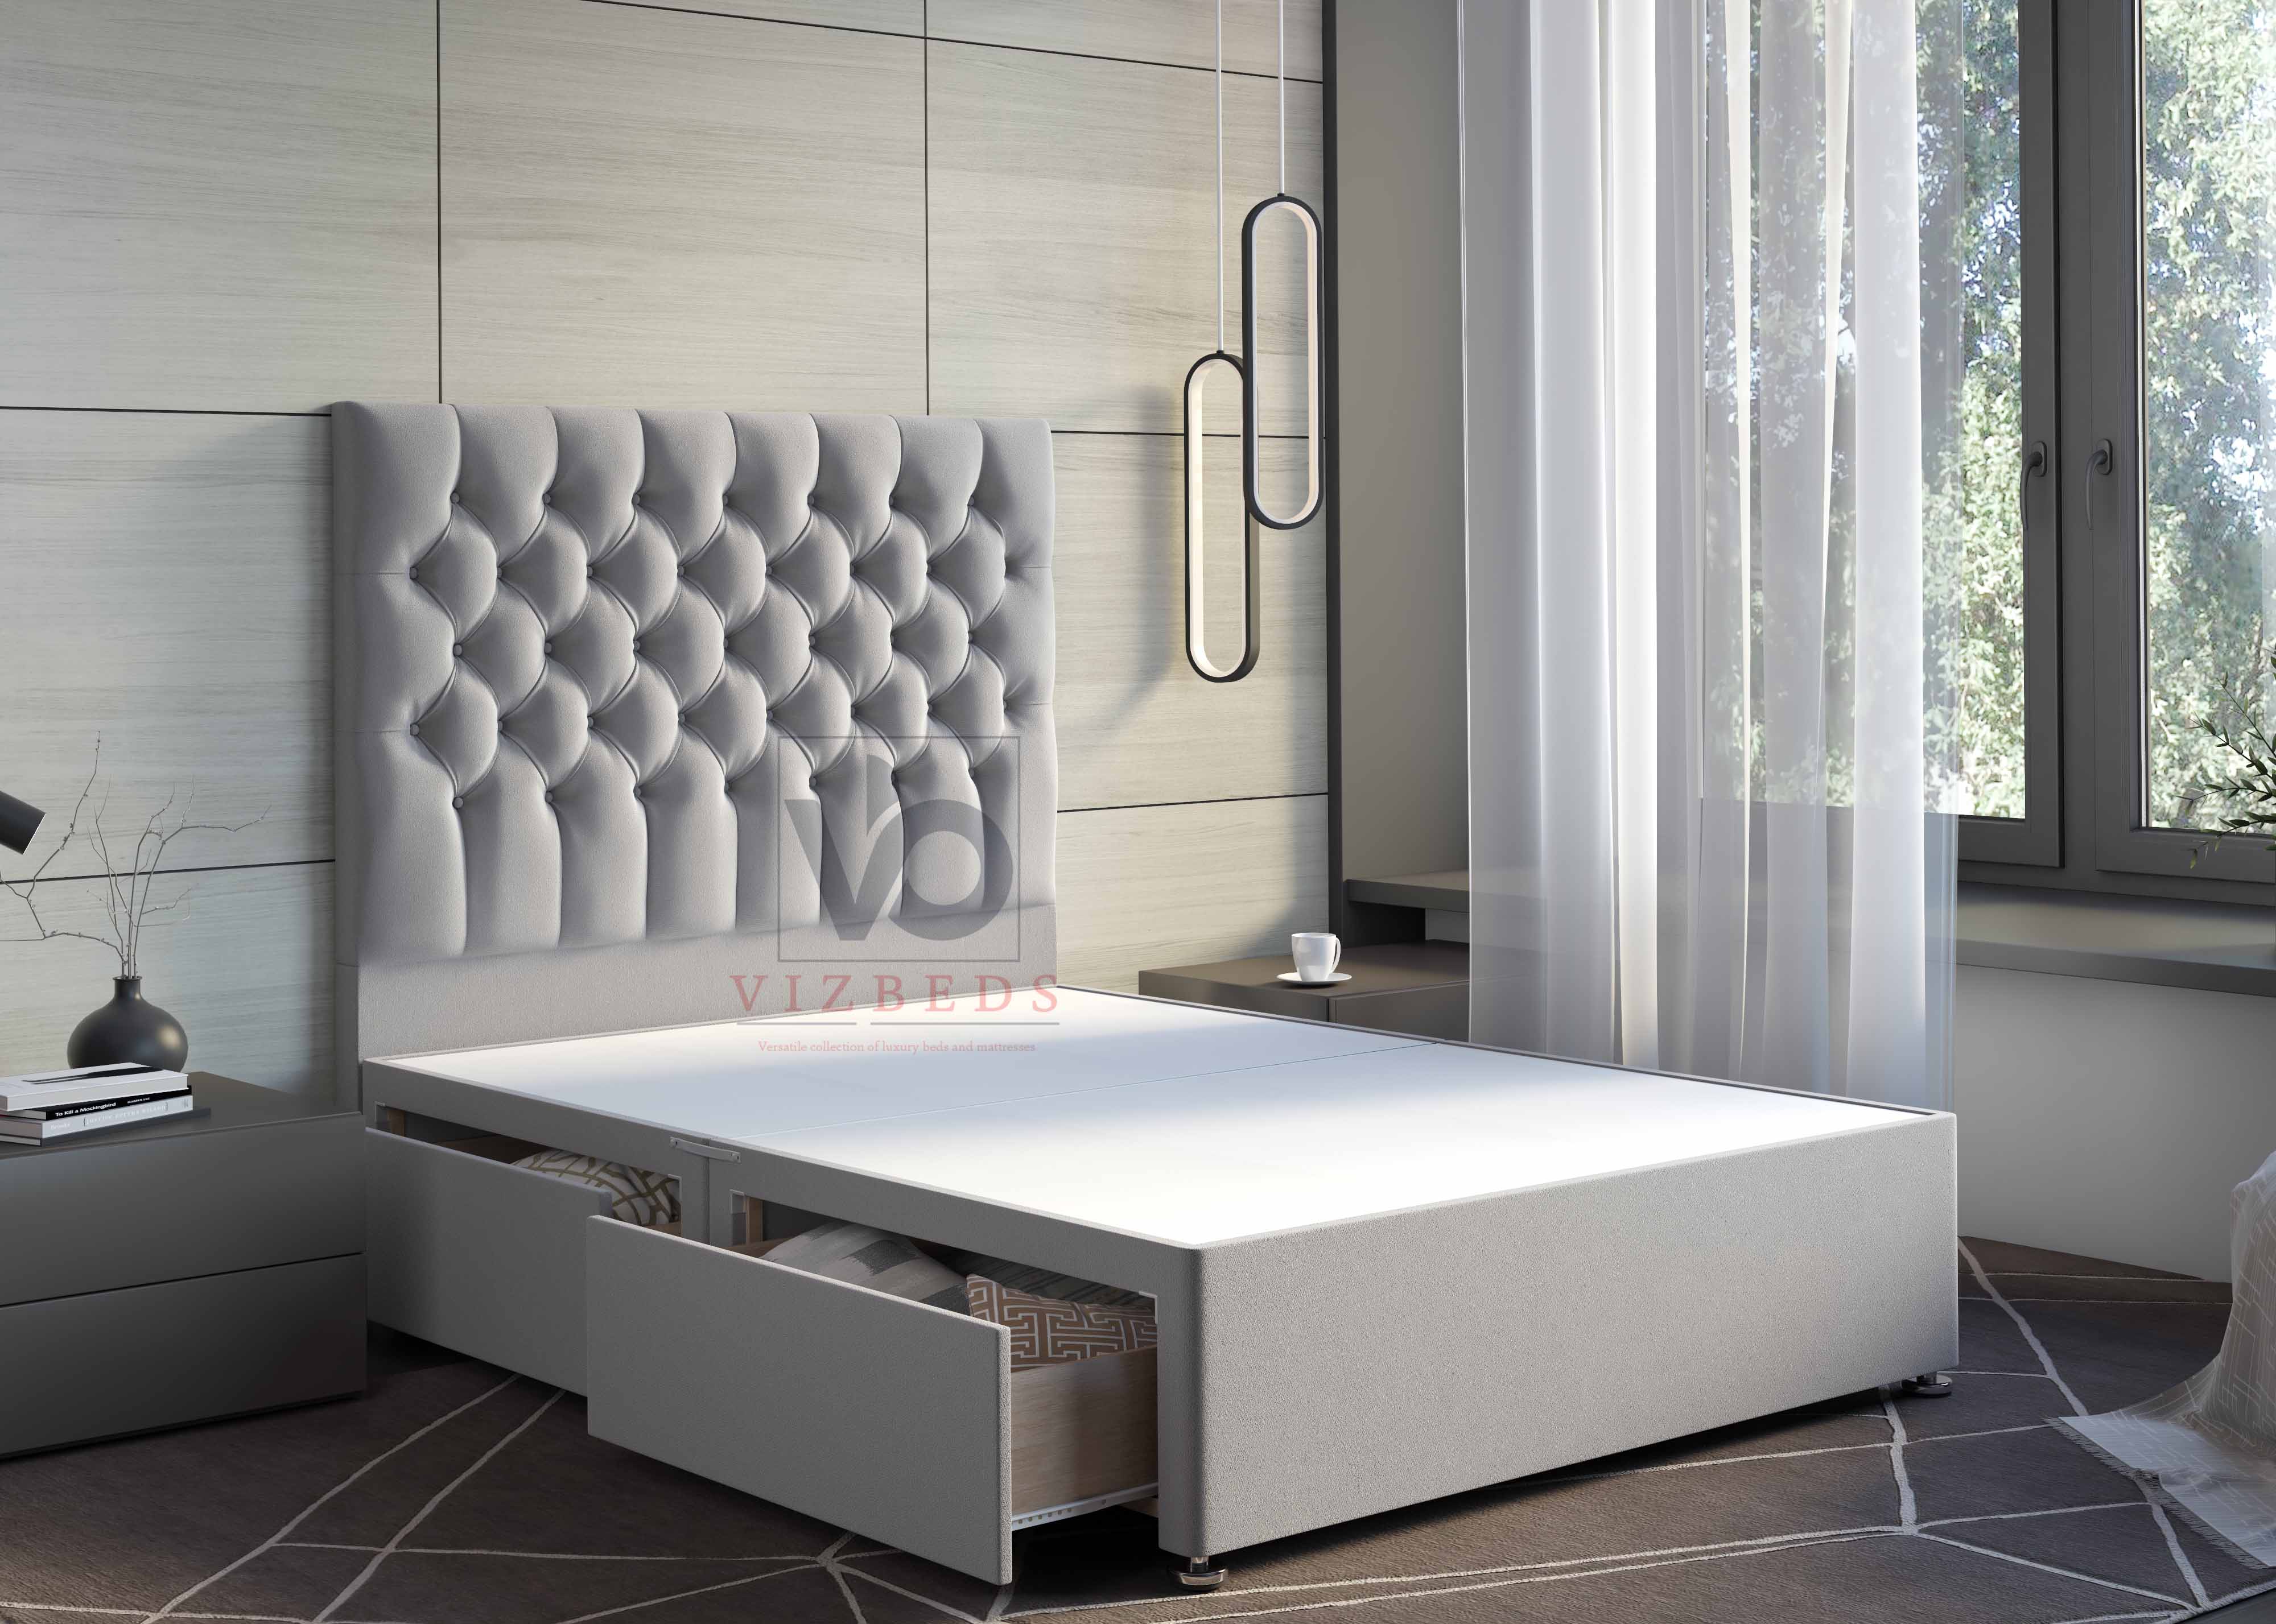 Salvia Divan Bed Set With Luxury Headboard